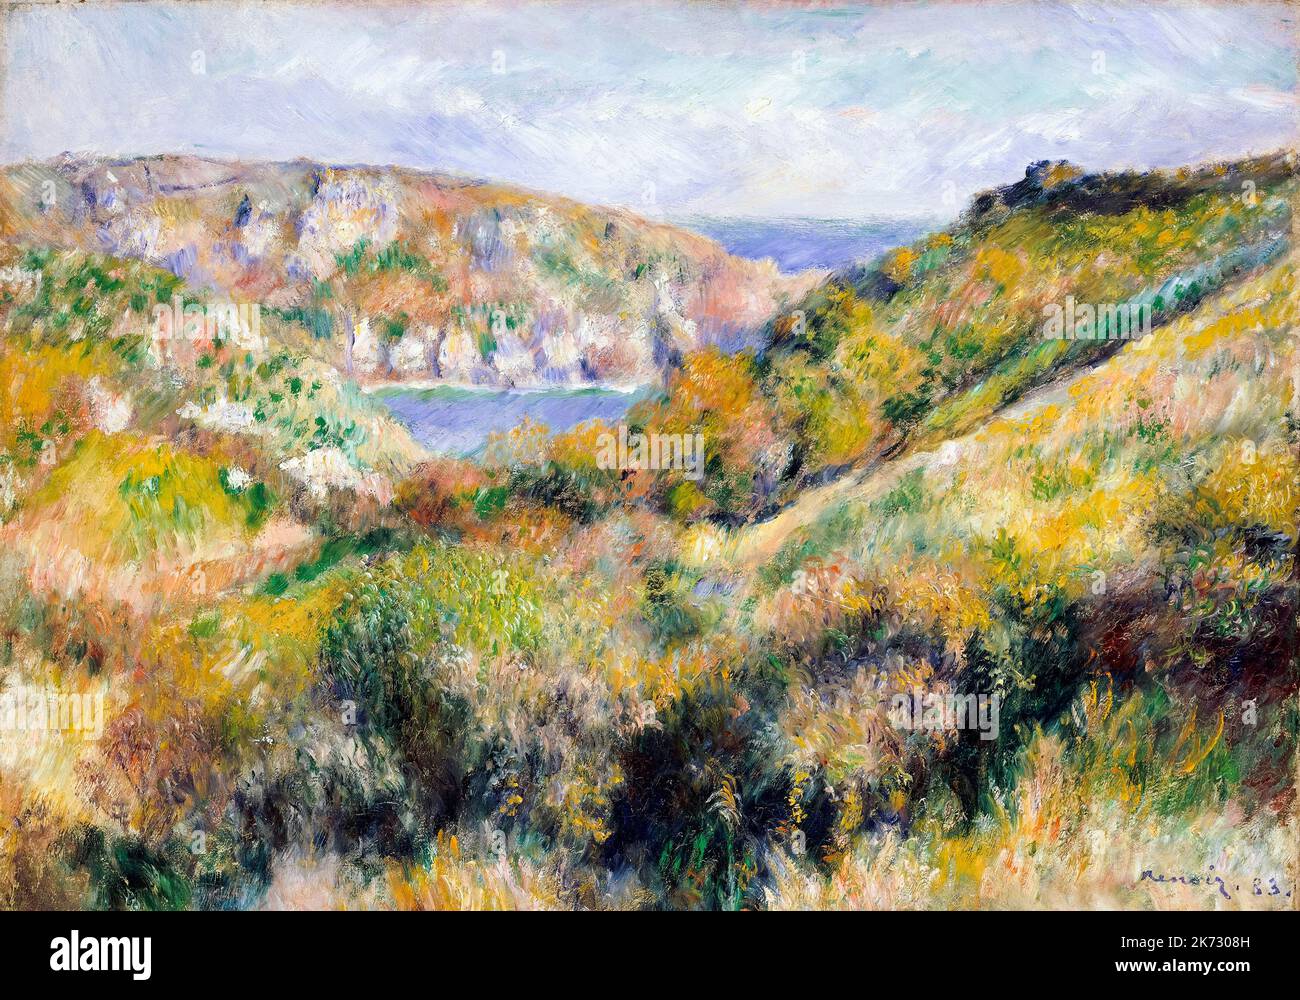 Pierre Auguste Renoir, collines autour de la baie du Moulin Huet, Guernesey, peinture de paysage à l'huile sur toile, 1883 Banque D'Images